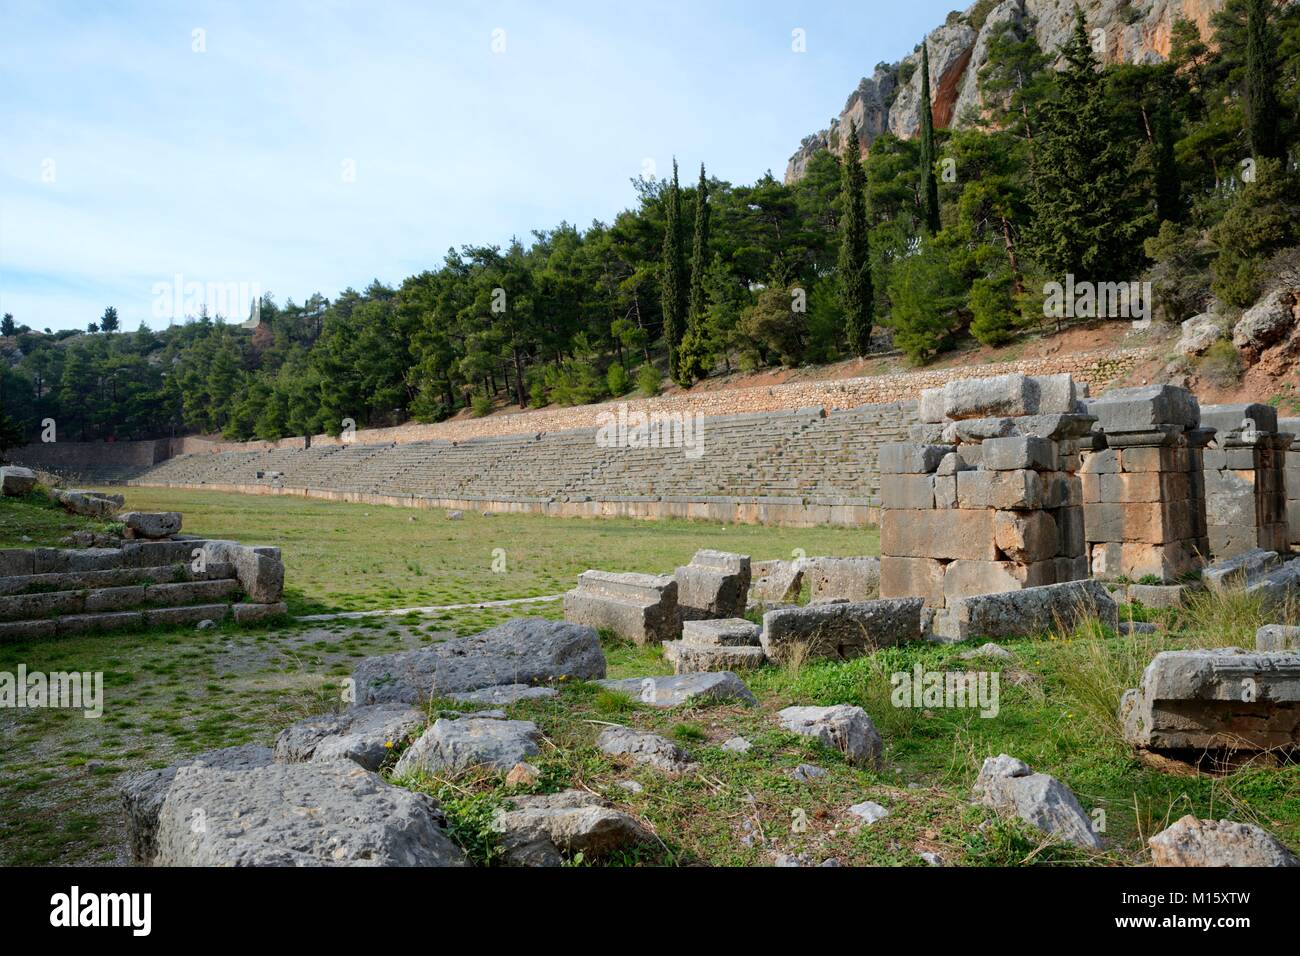 Le stade de Delphes se situe sur le point le plus haut du site archéologique de Delphes. Delphes était un important sanctuaire religieux sacré de la Grèce antique Banque D'Images